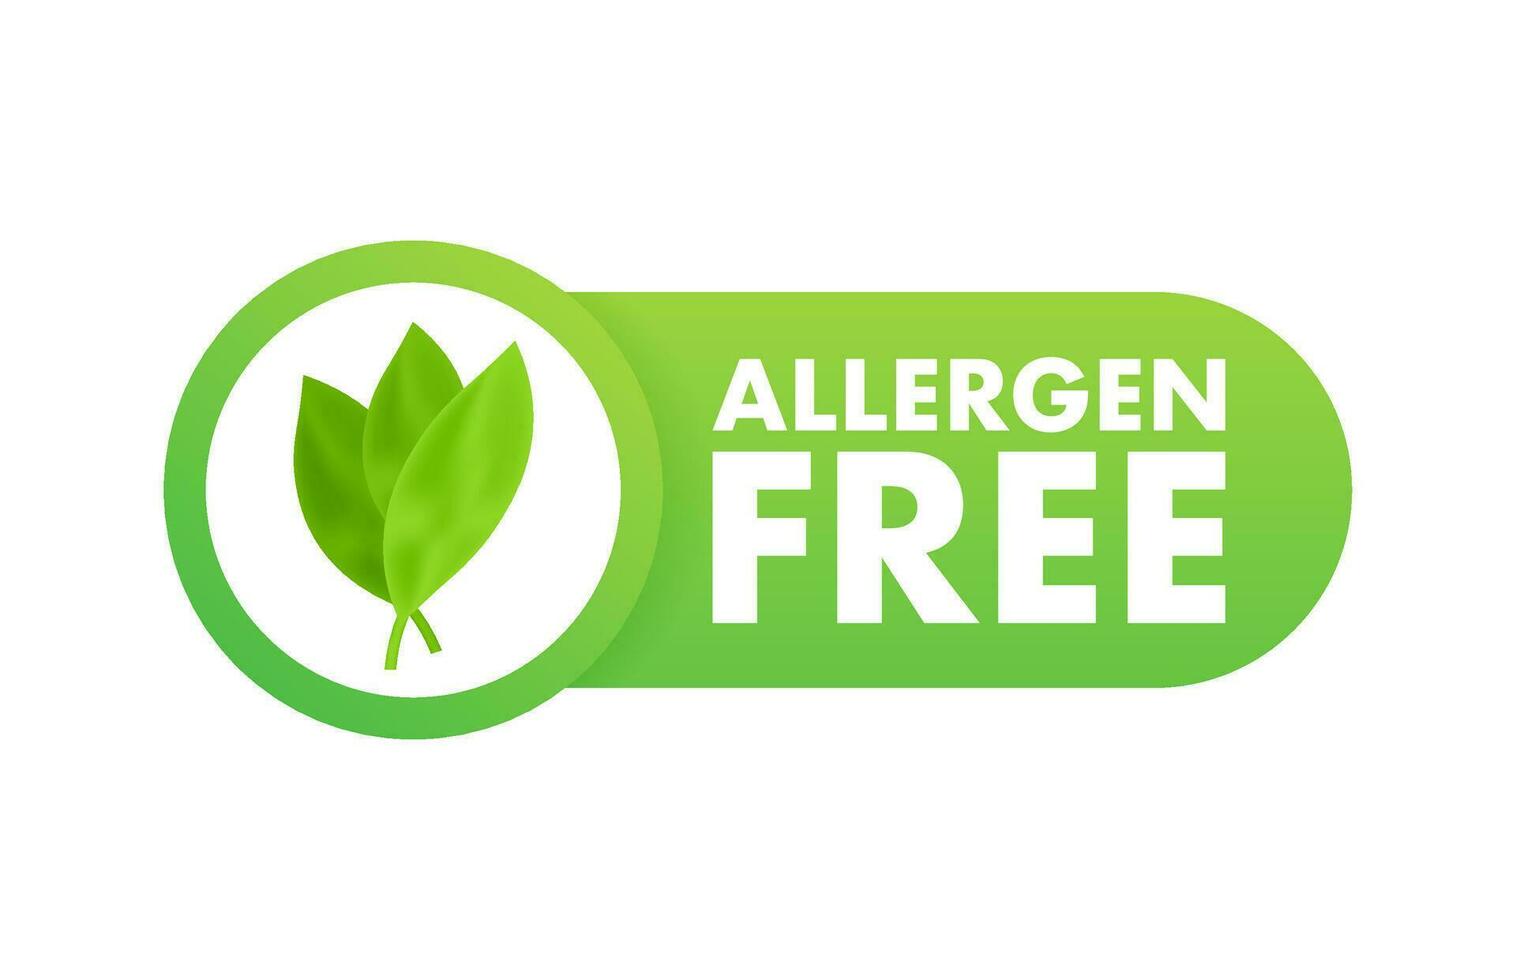 Allergen free stamp. allergen free round ribbon label. Vector stock illustration